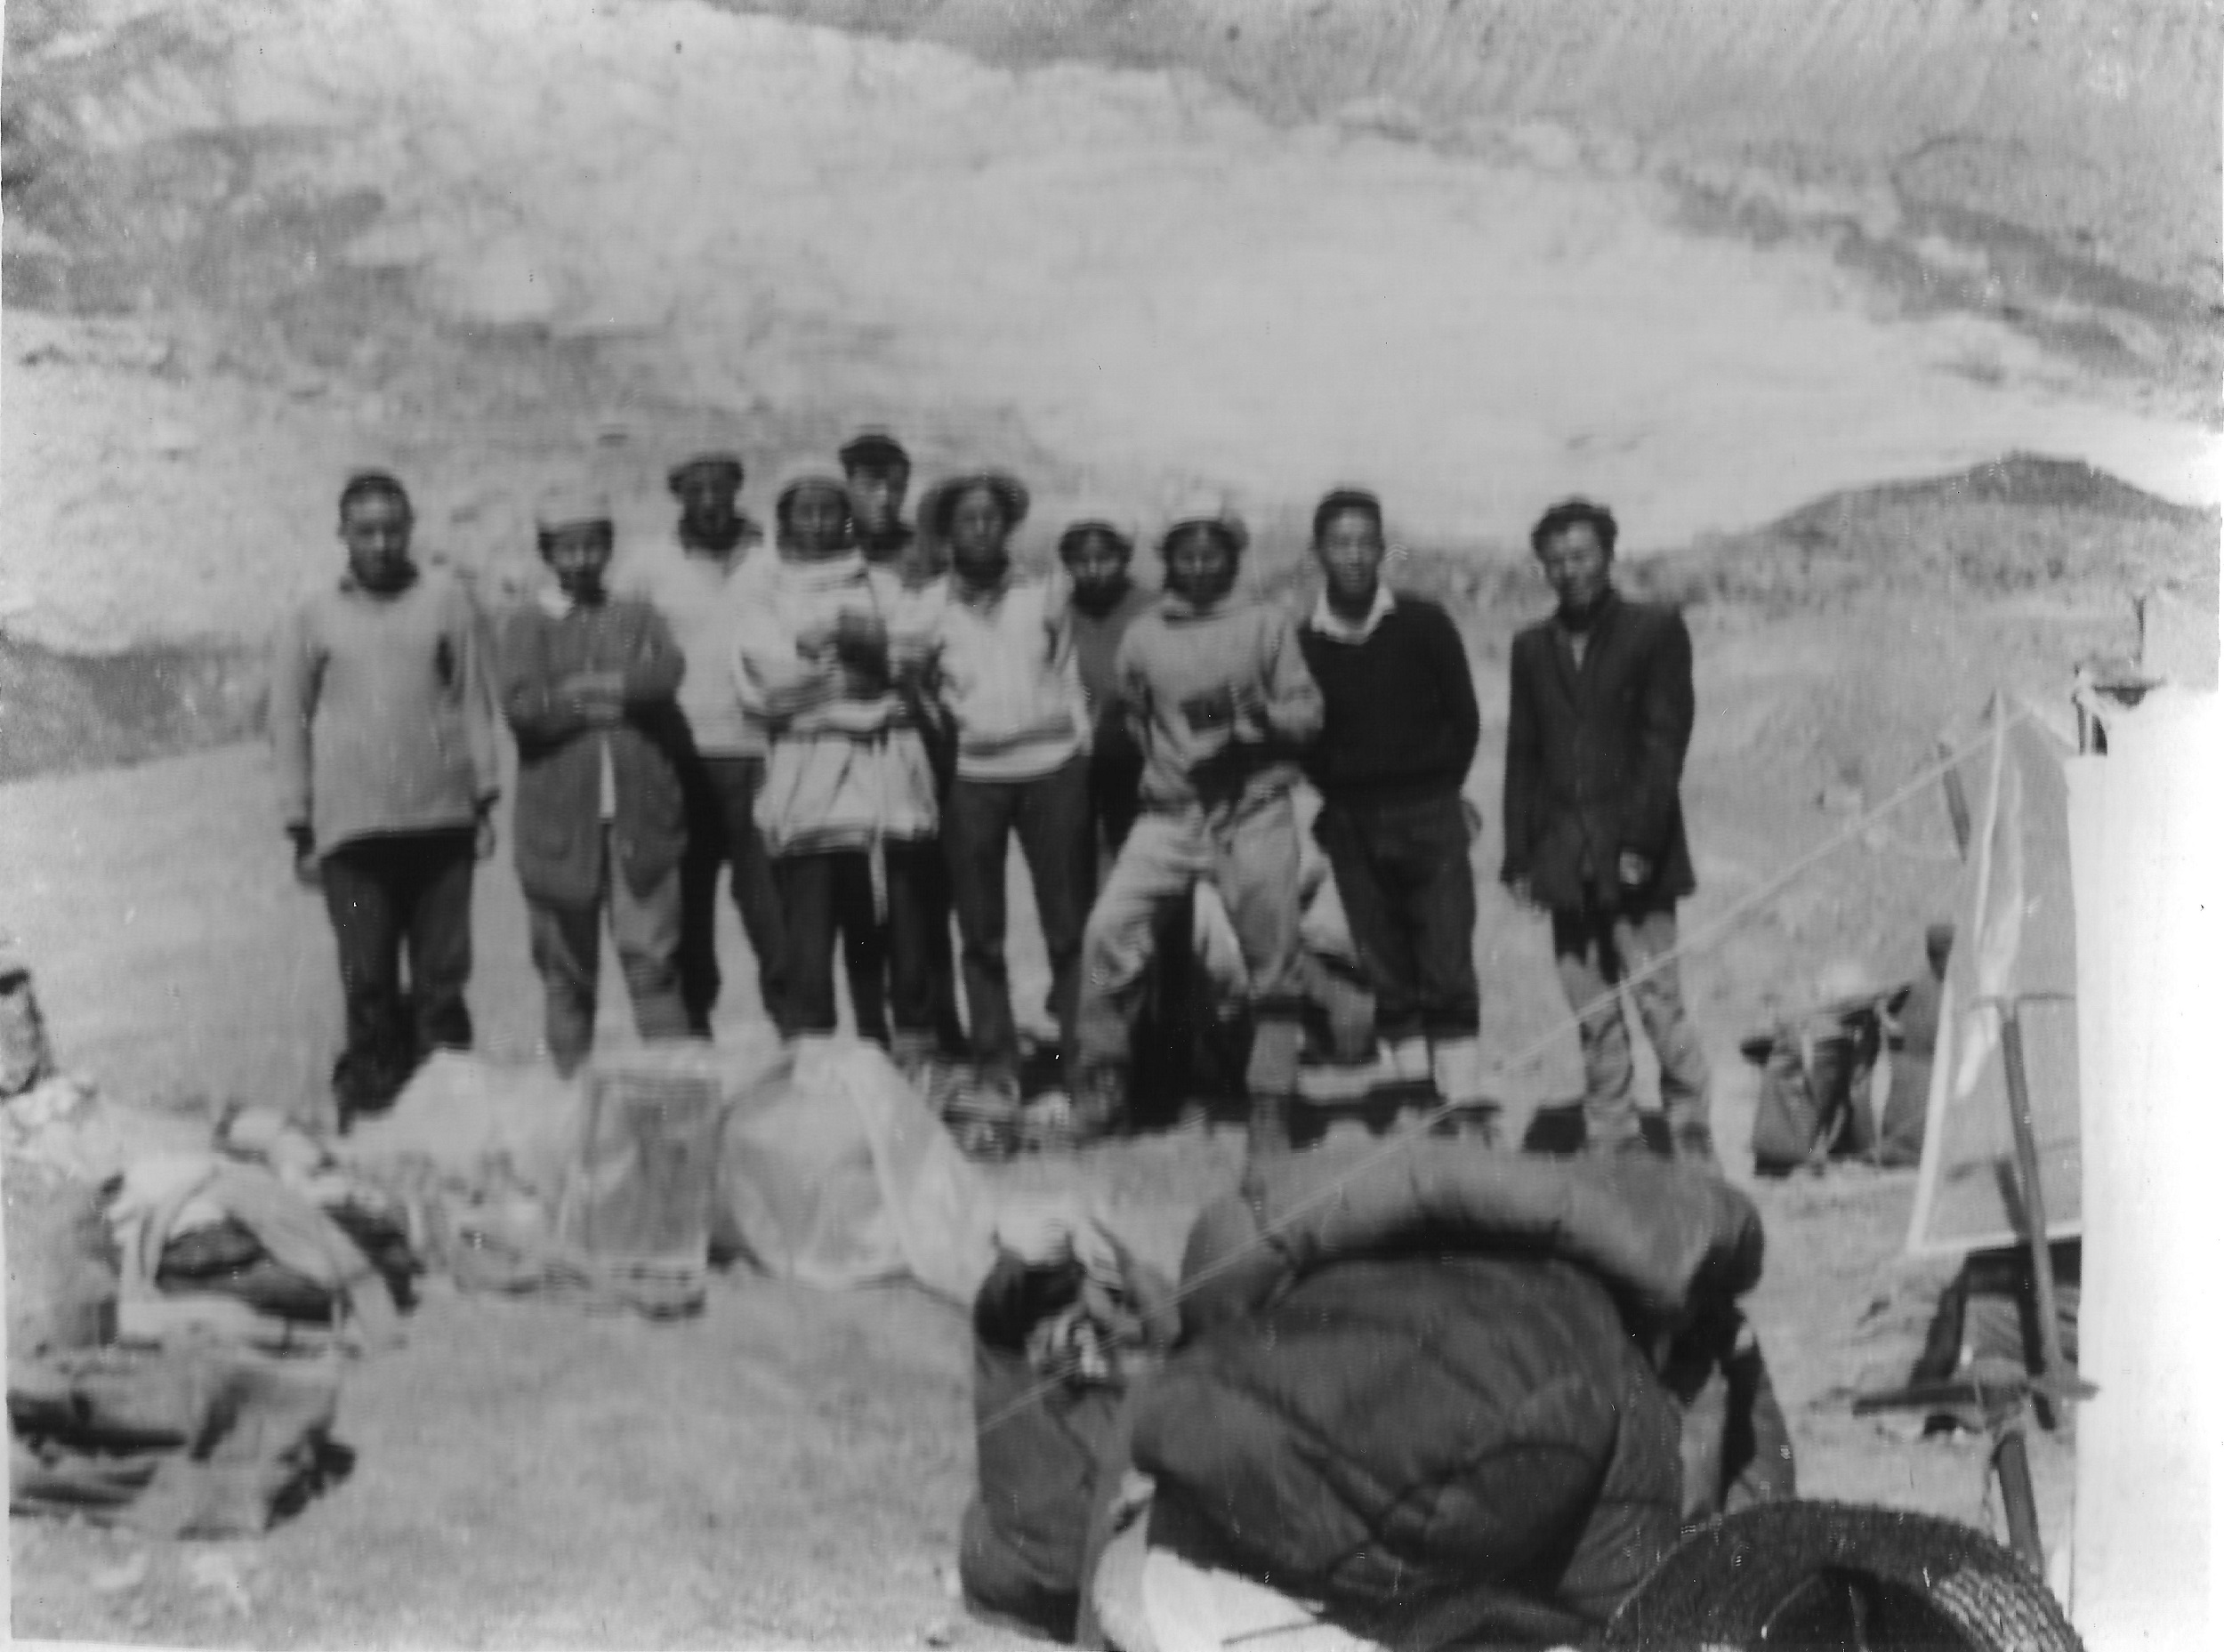 At the base camp, before the climb began. From left: Lama (porter), Shefali (member), Palgun (porter), Sujaya (leader), Pasang (Sherpa), Purnima (doctor), Nilu (member), Kamala (member), Gylgen (Sherpa), Gupta Ram (cook) [image by: Sudipta Sengupta]